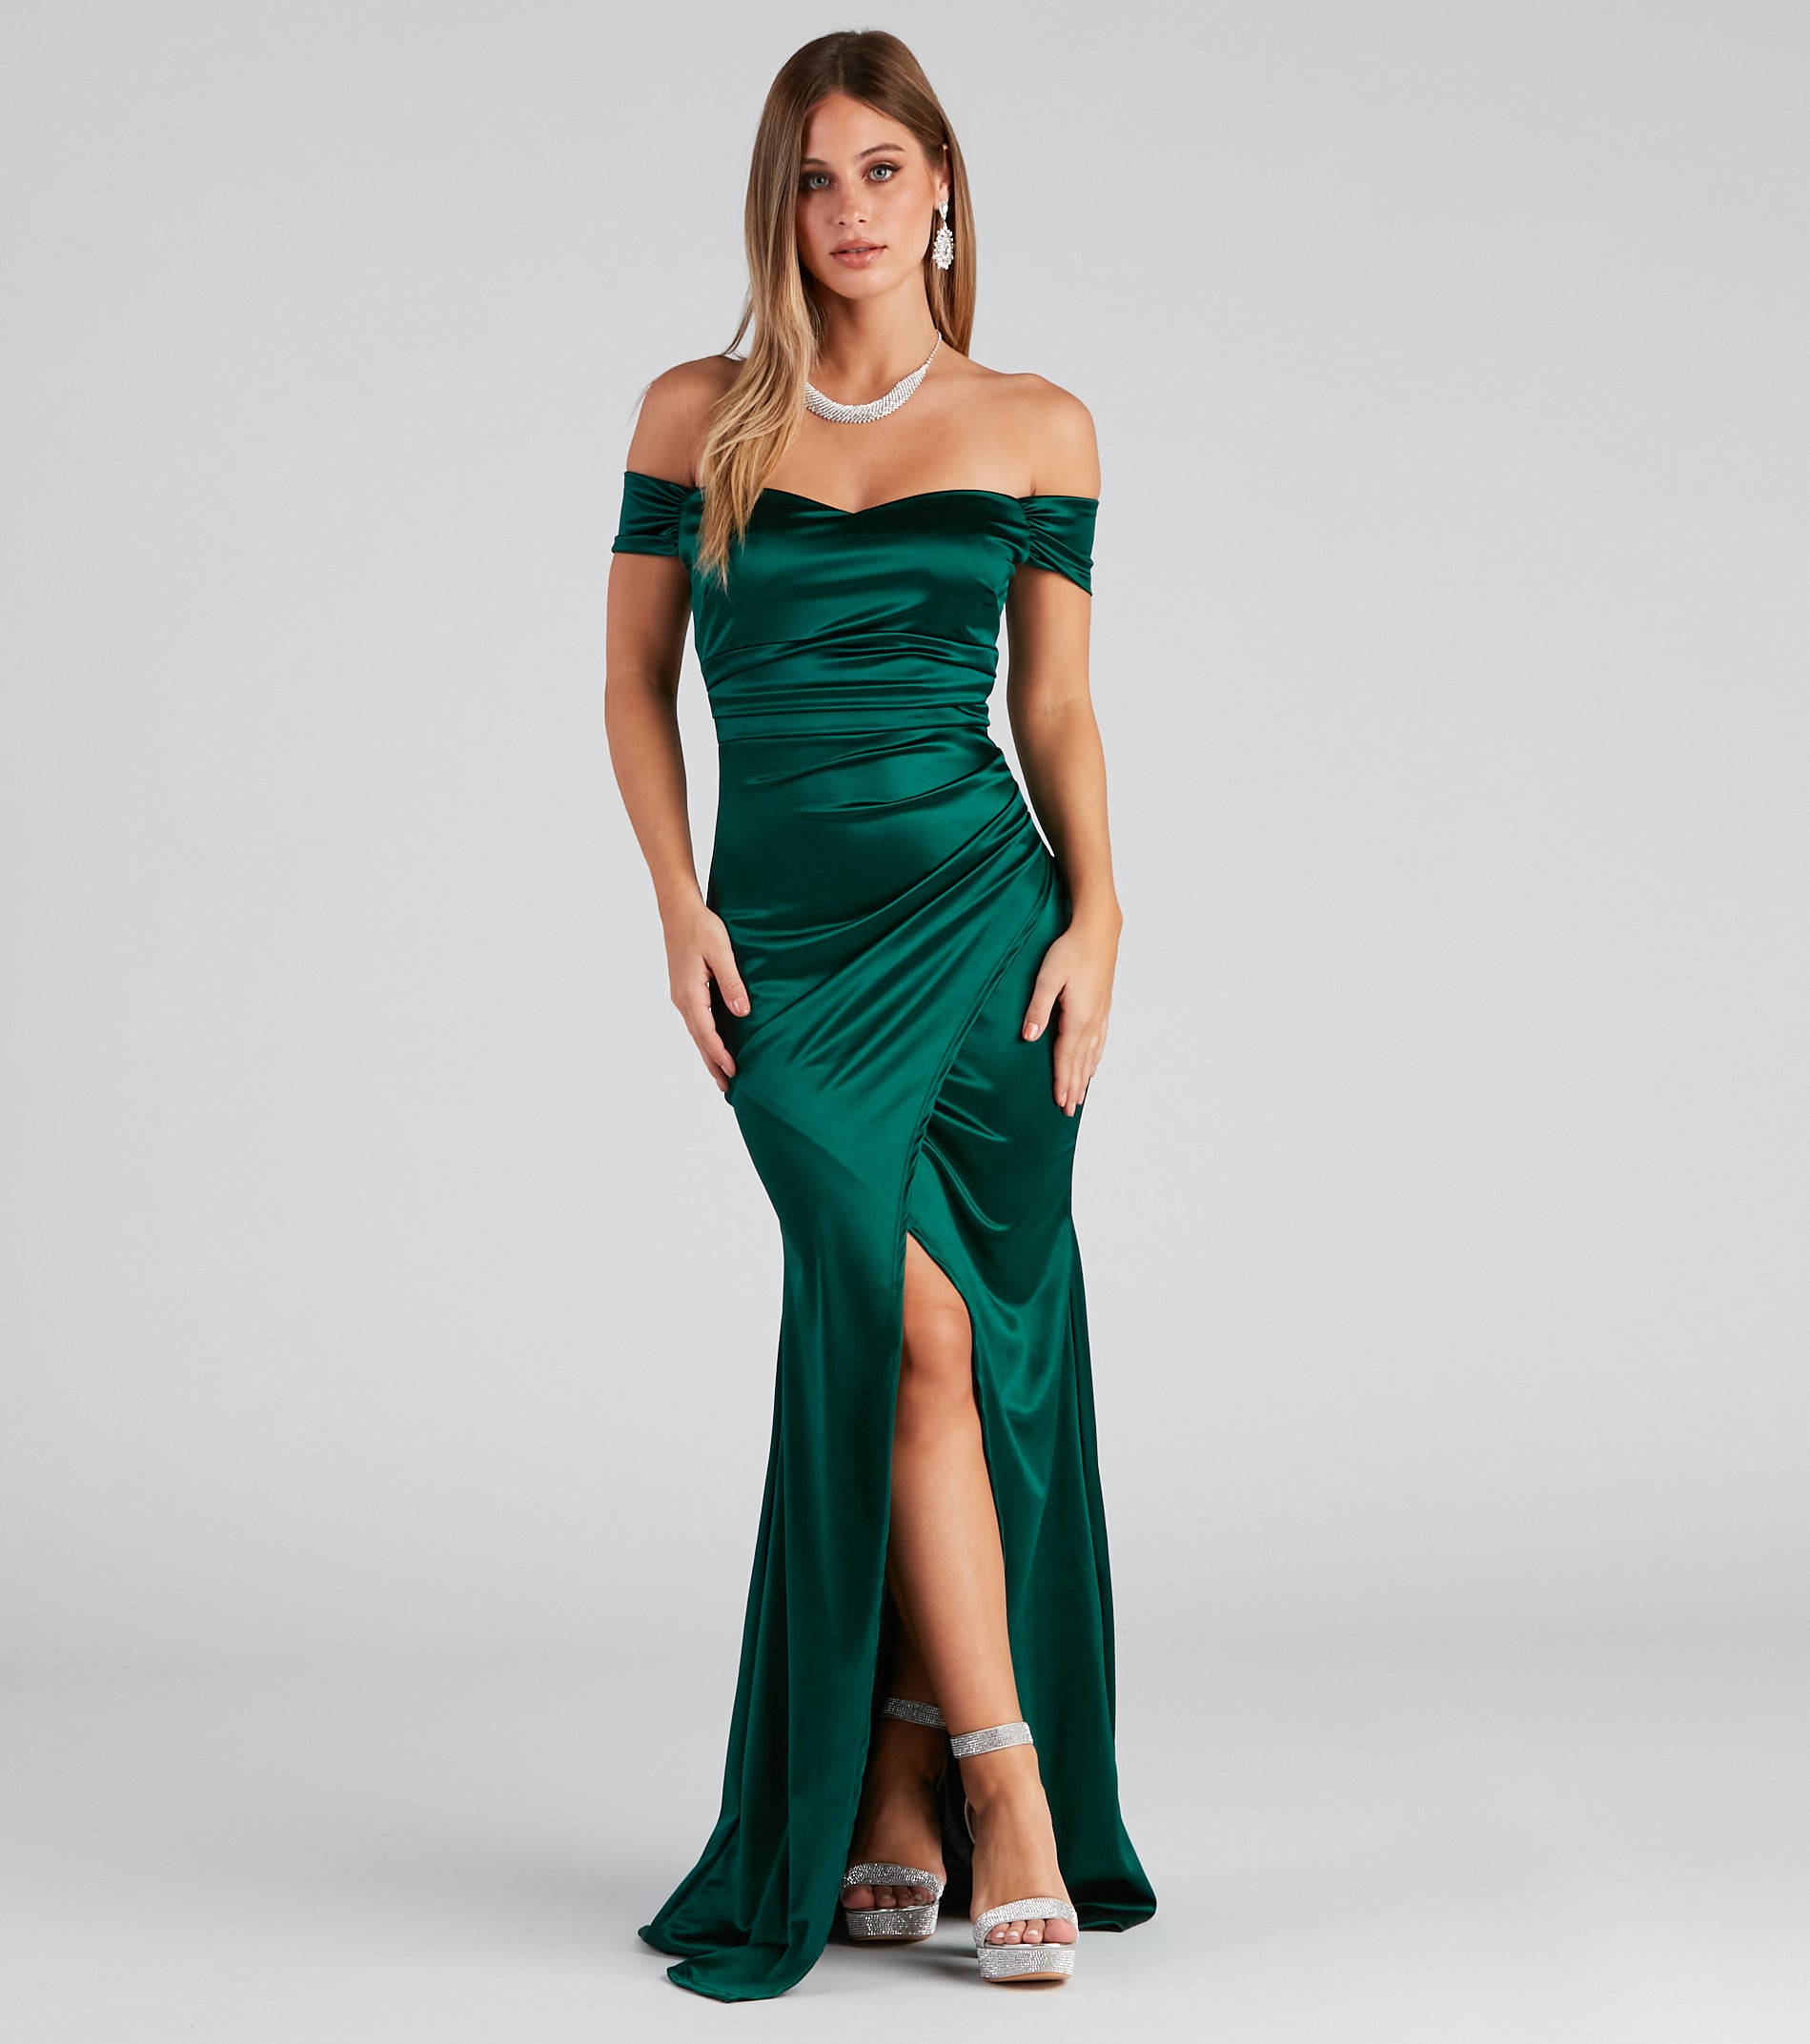 Valencia Formal Off-The-Shoulder Wrap Dress & Windsor